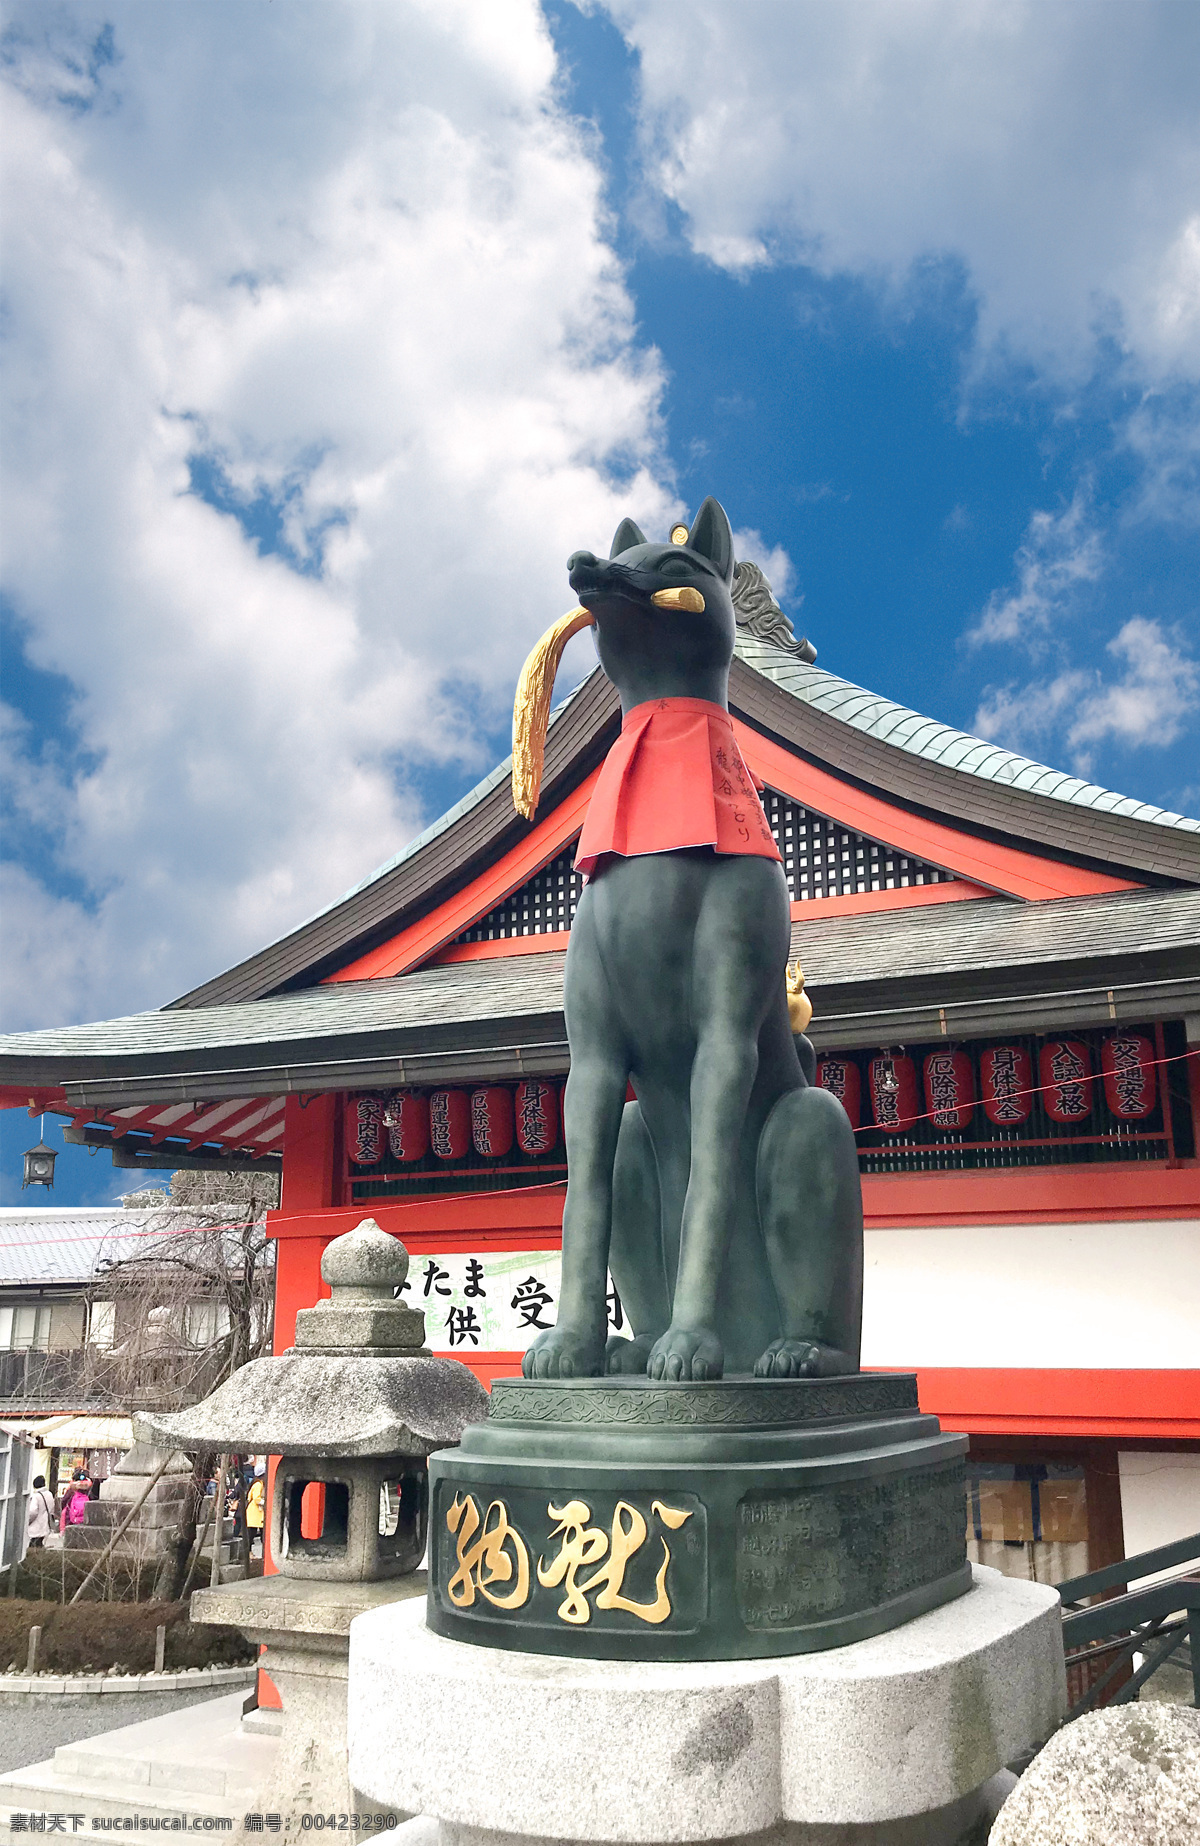 日本雕像 日本 雕像 狗 神犬 日本建筑 高清 日本寺庙 寺庙 摄影高清 旅游摄影 国内旅游